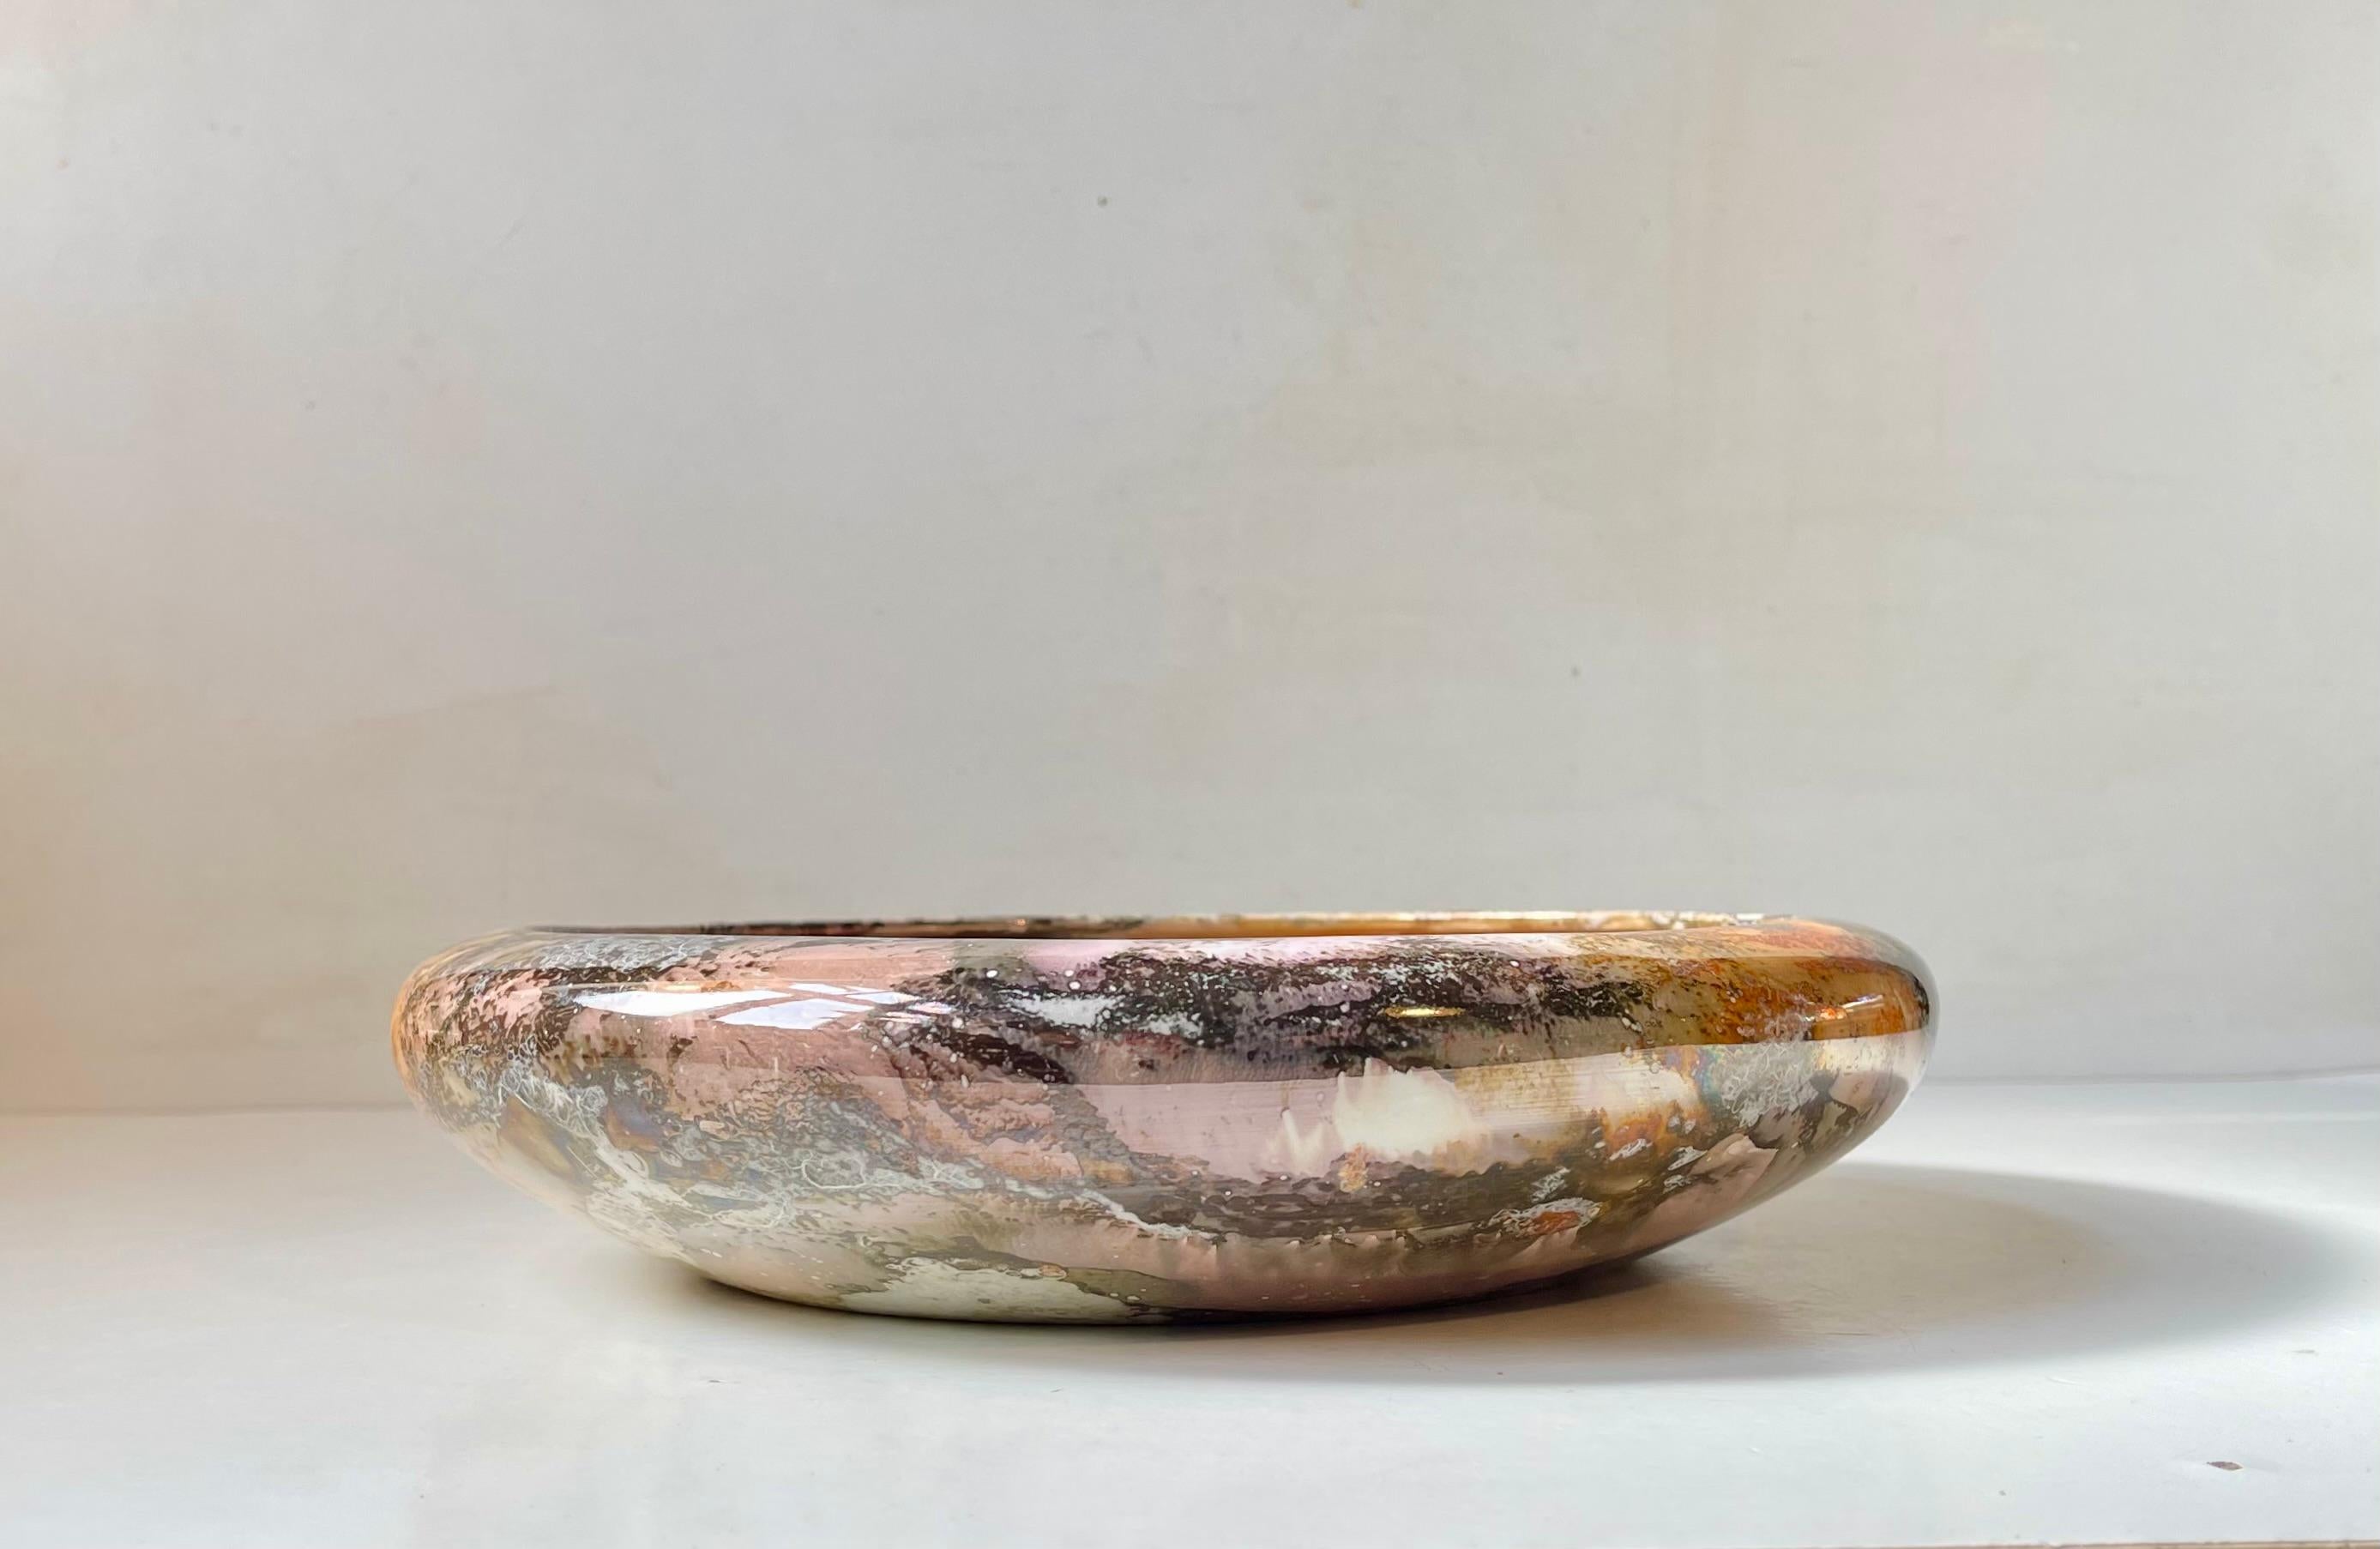 Außergewöhnliche Mittelstück-Schale mit marmorierter Glanzglasur. Er ist aus Fayence/Keramik gefertigt und die Farbpalette besteht aus einem bunten Mix aus Rosa, Orange, Braun, Schwarz, Grau und Weiß. Entworfen und hergestellt von Arabia in Finnland